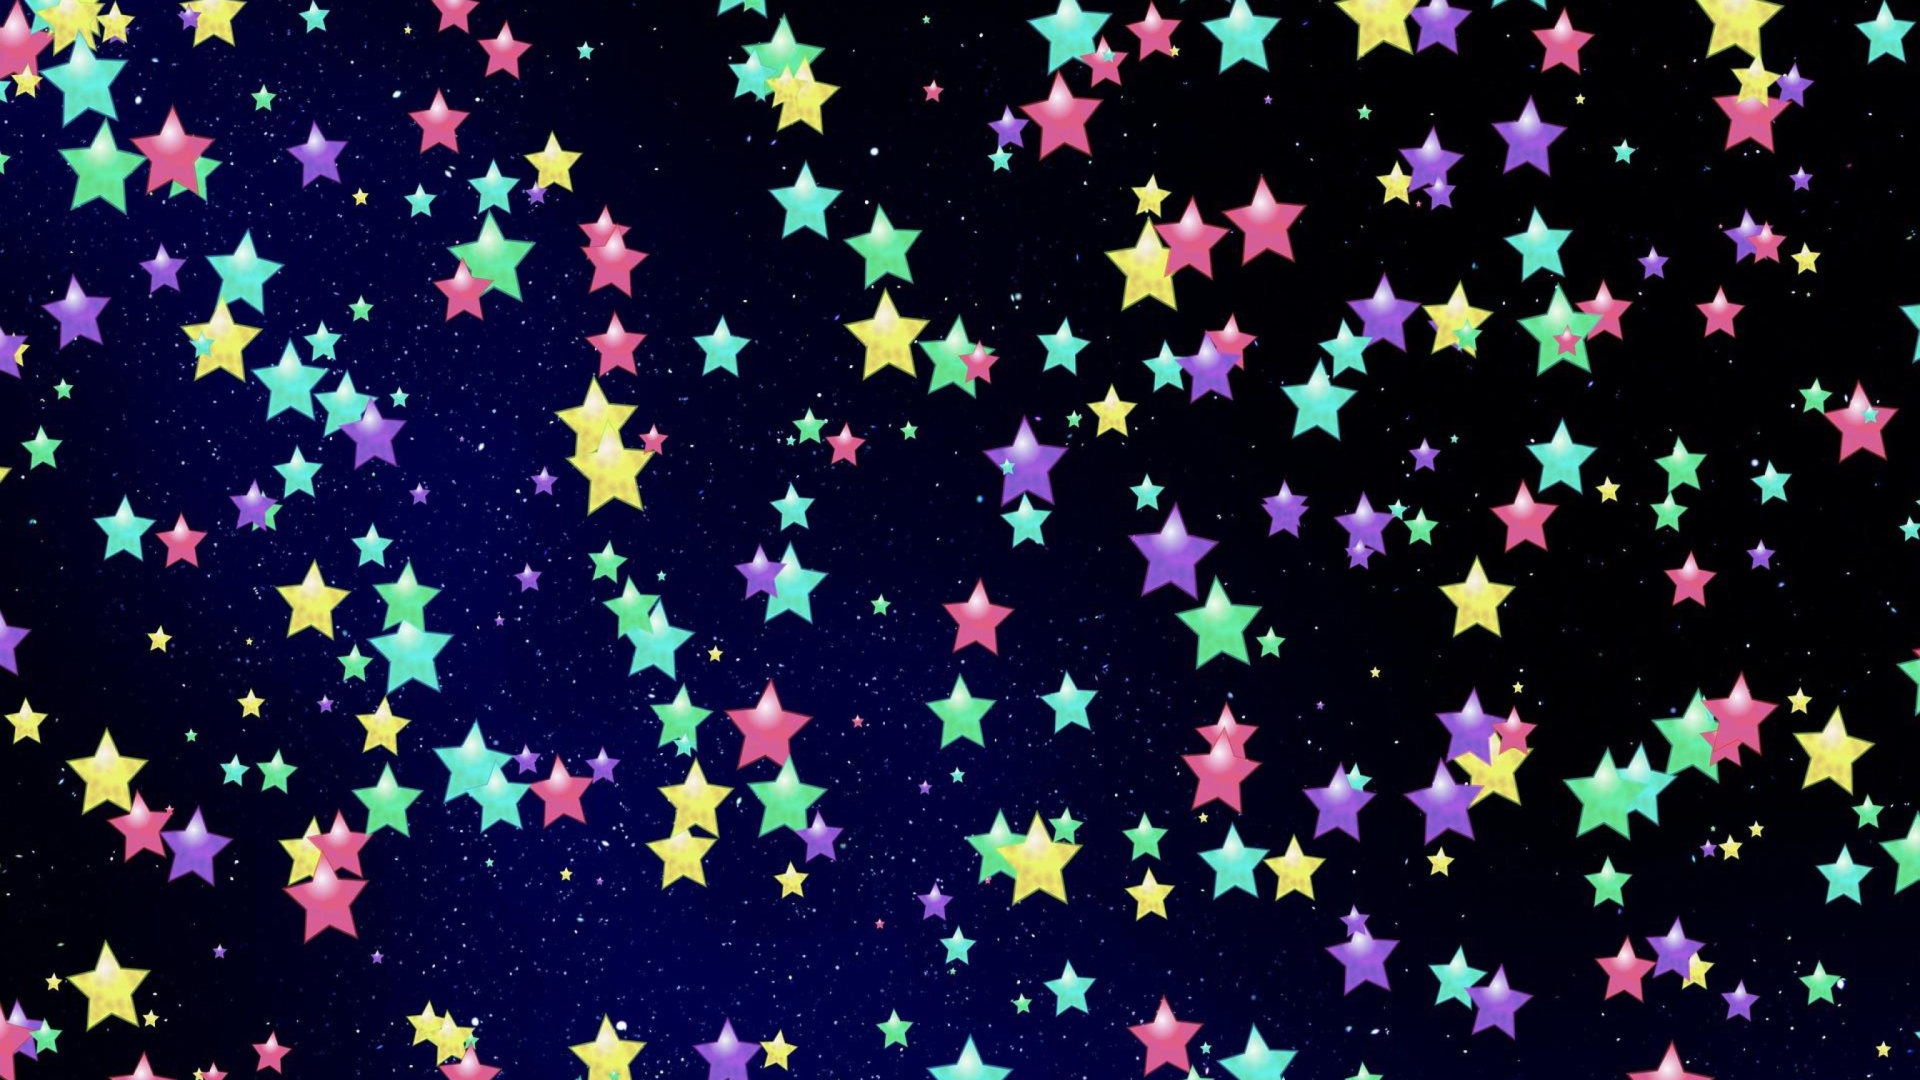 Das Colorful Stars Wallpaper 1920x1080